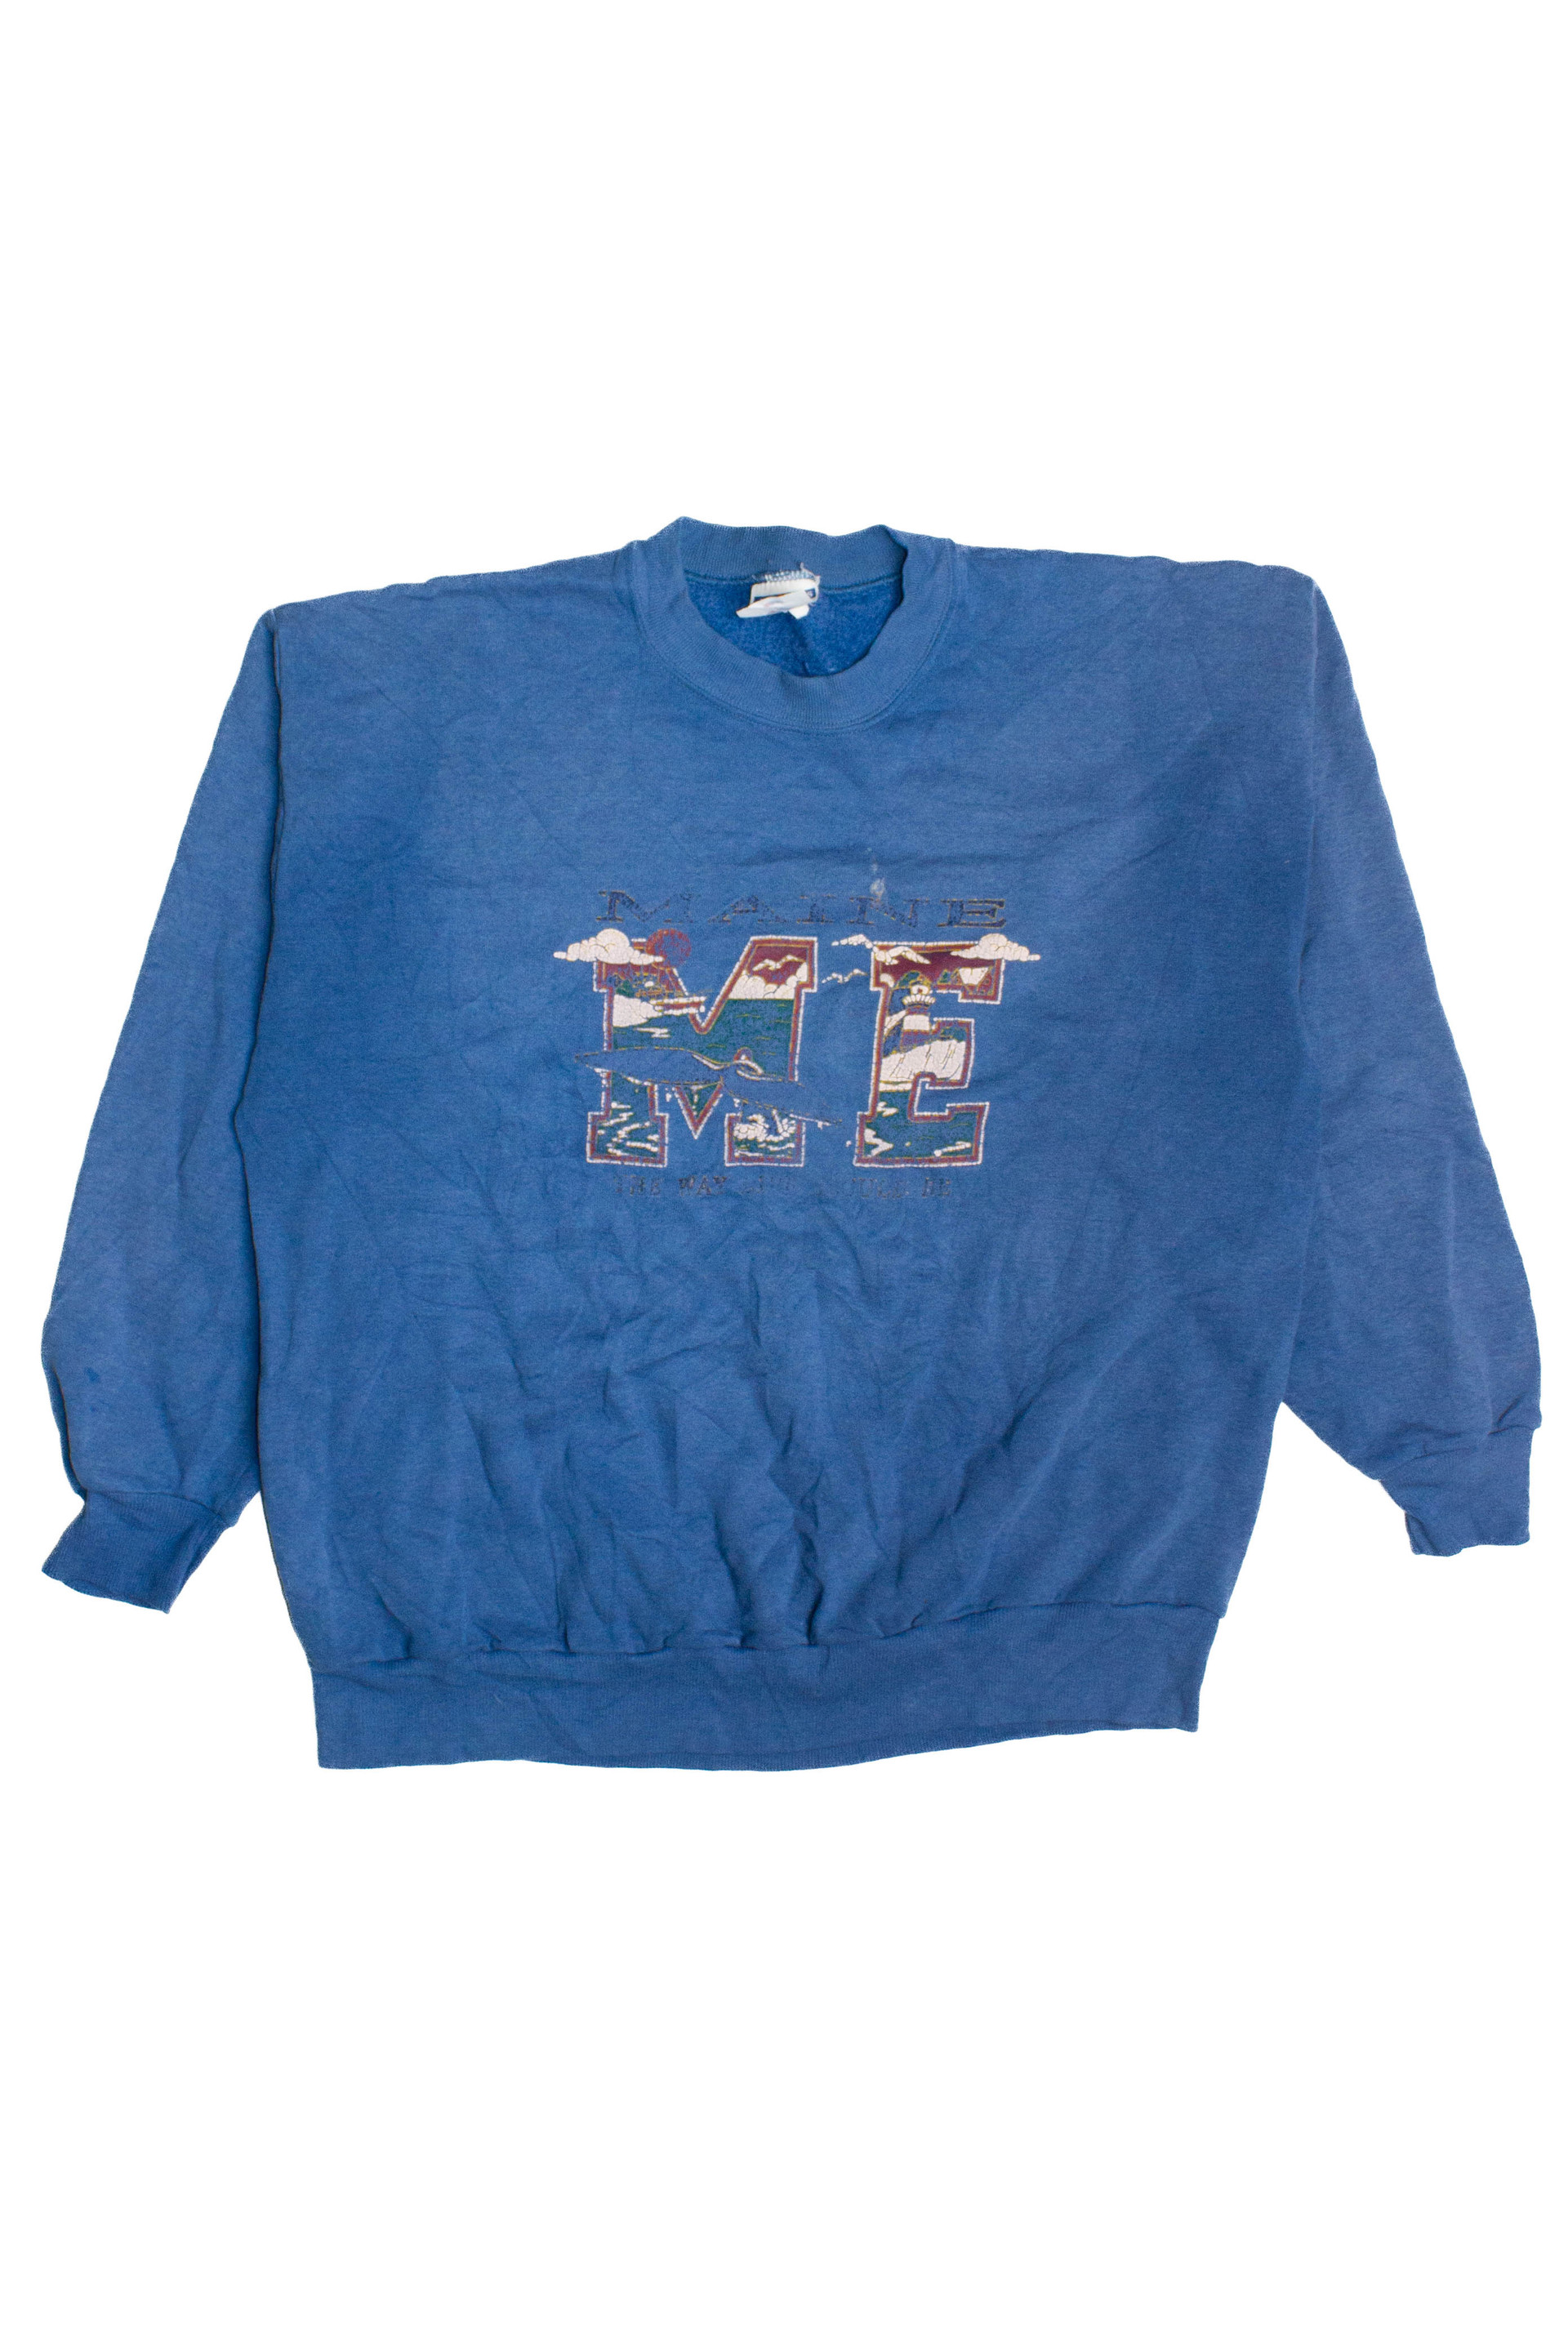 Vintage Milwaukee Bucks Sweatshirt (1990s) - Ragstock.com